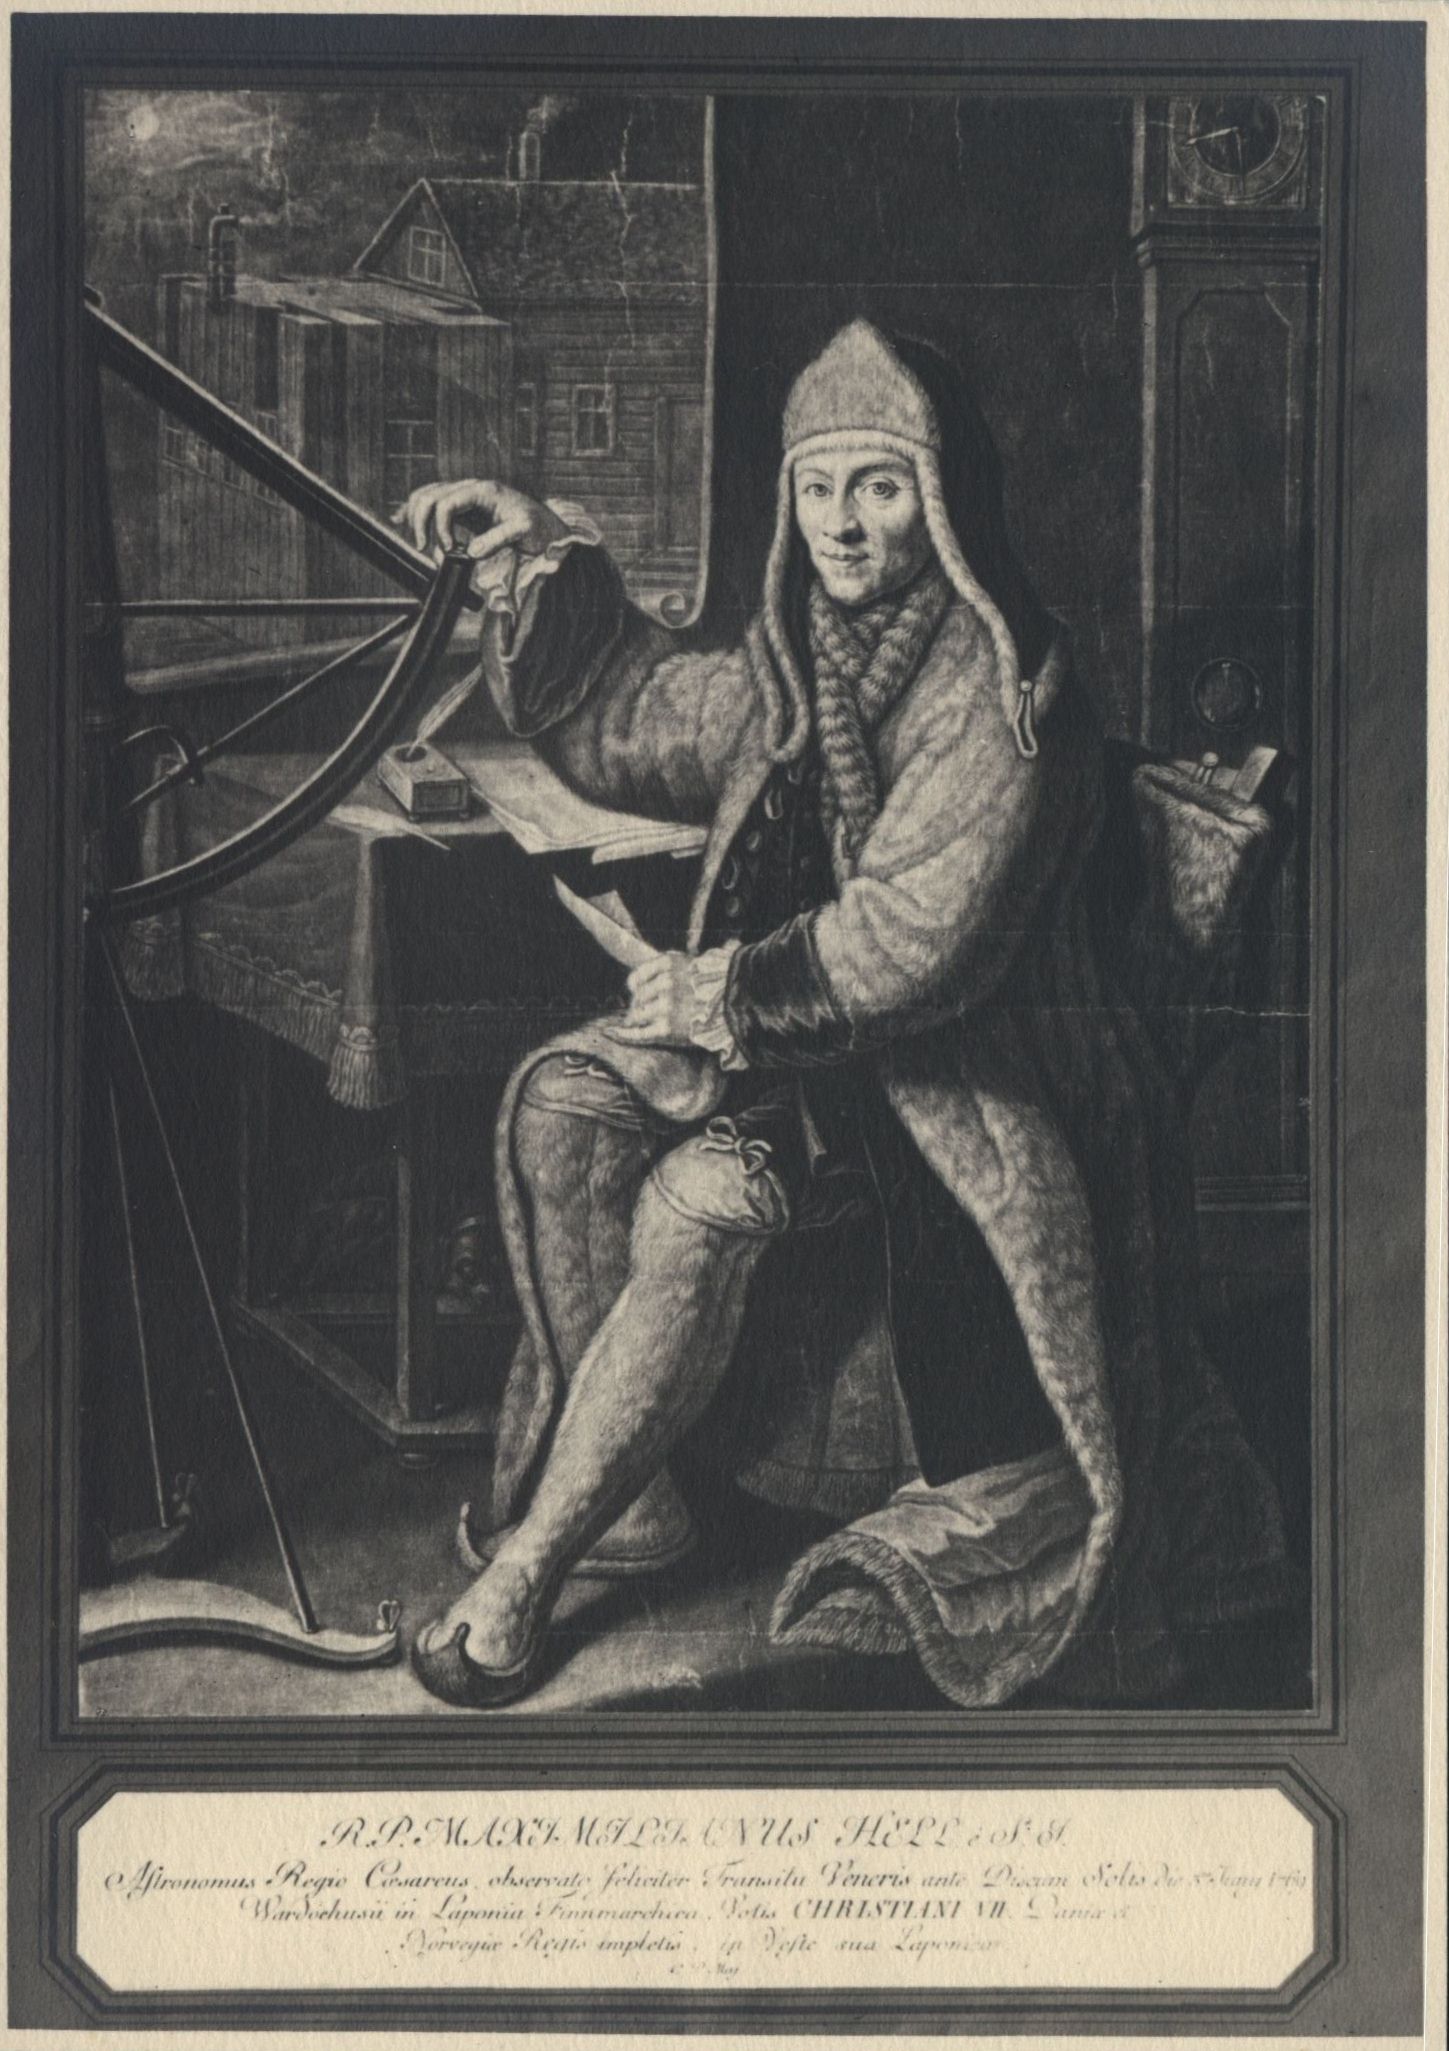 Porträt von Maximilian Hell in Lappländischer Tracht